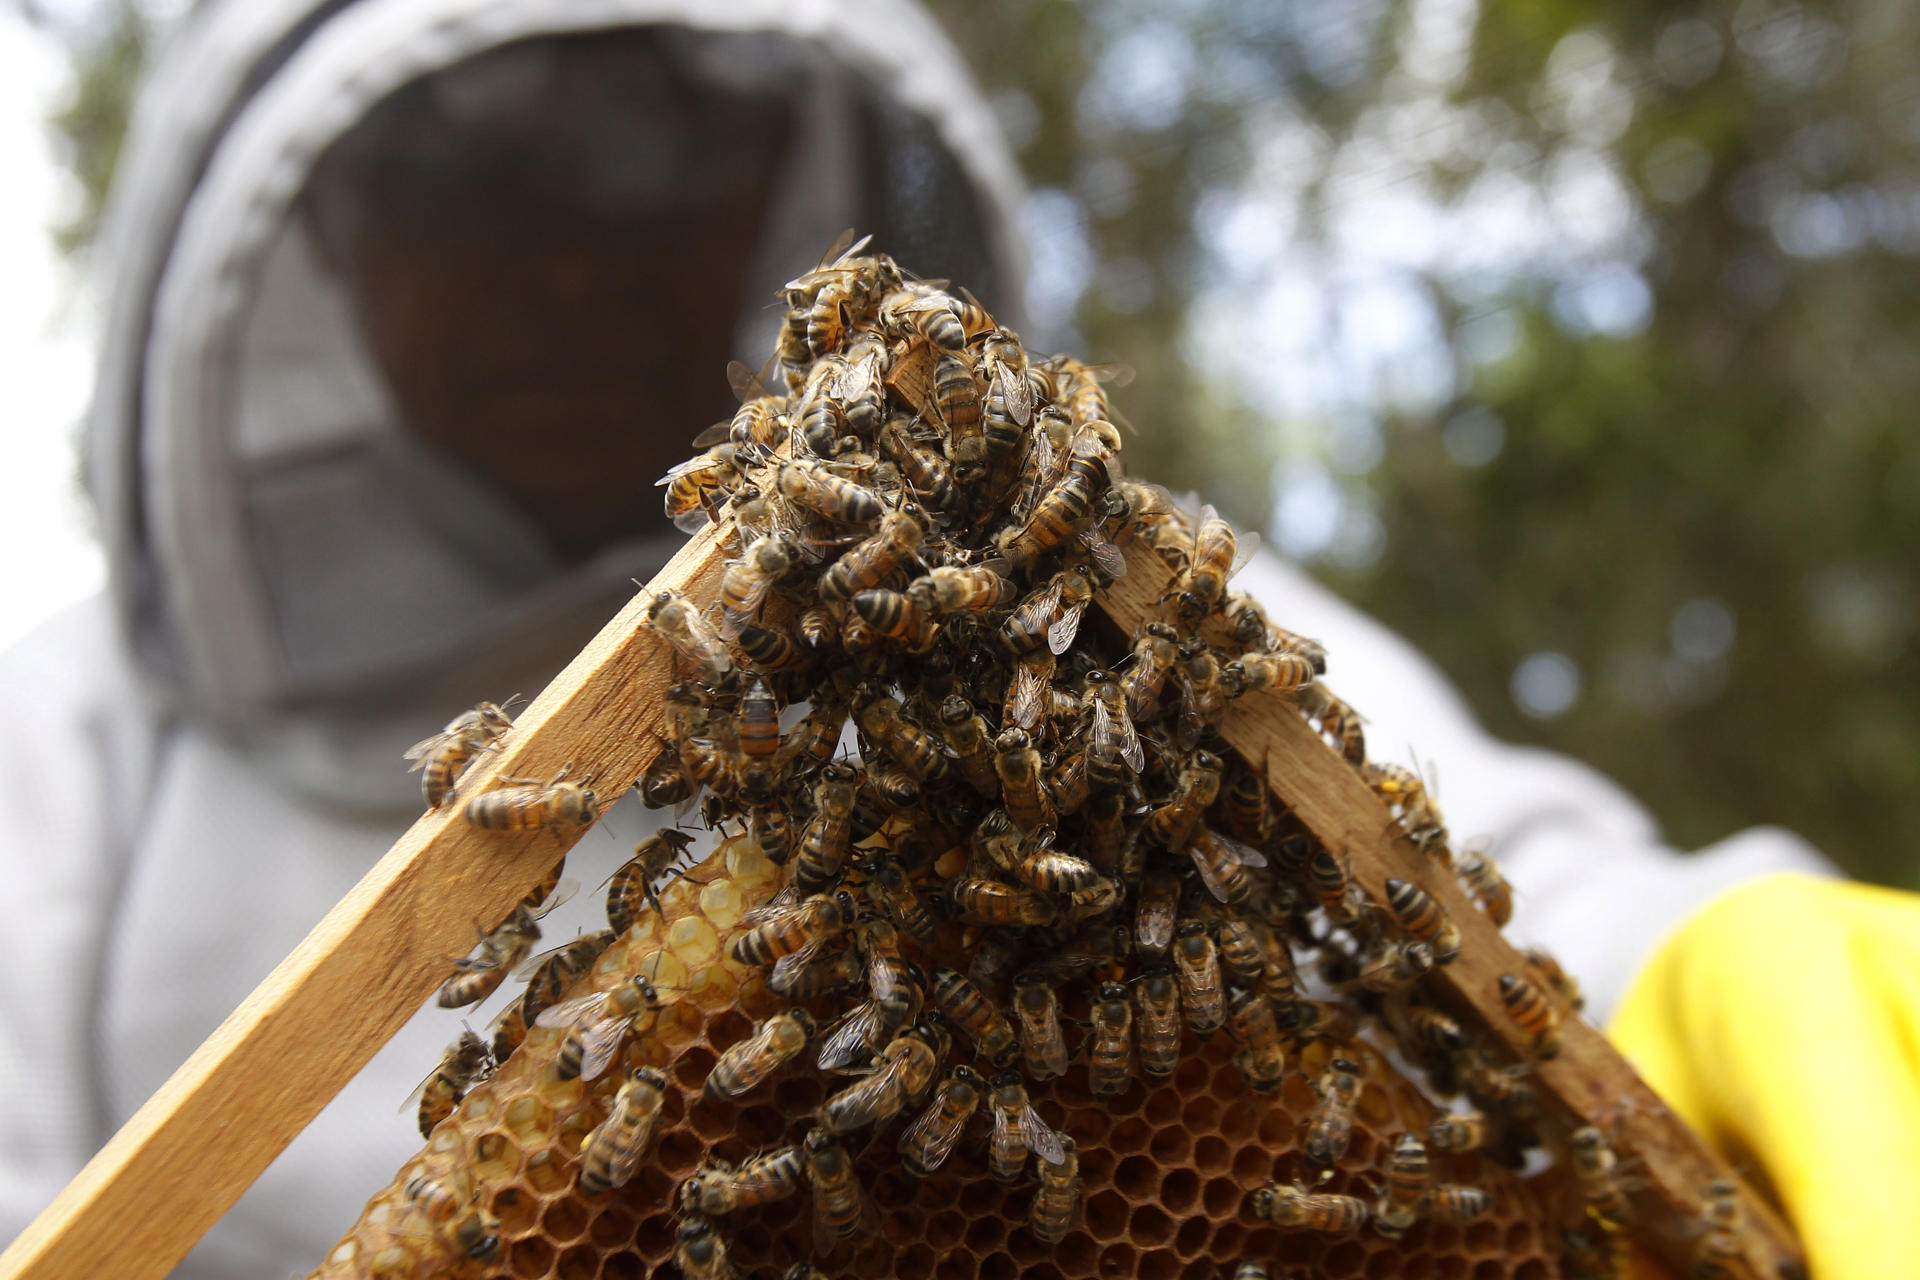 En el Bajo Cauca colombiano, un territorio golpeado por la violencia donde la apicultura se convirtió en una alternativa de restauración social, económica y ecológica, más de 200 productores de miel aprendieron a cuidar sus abejas de los efectos del cambio climático con métodos artesanales e ingeniosos. EFE/ Luis Eduardo Noriega A. 